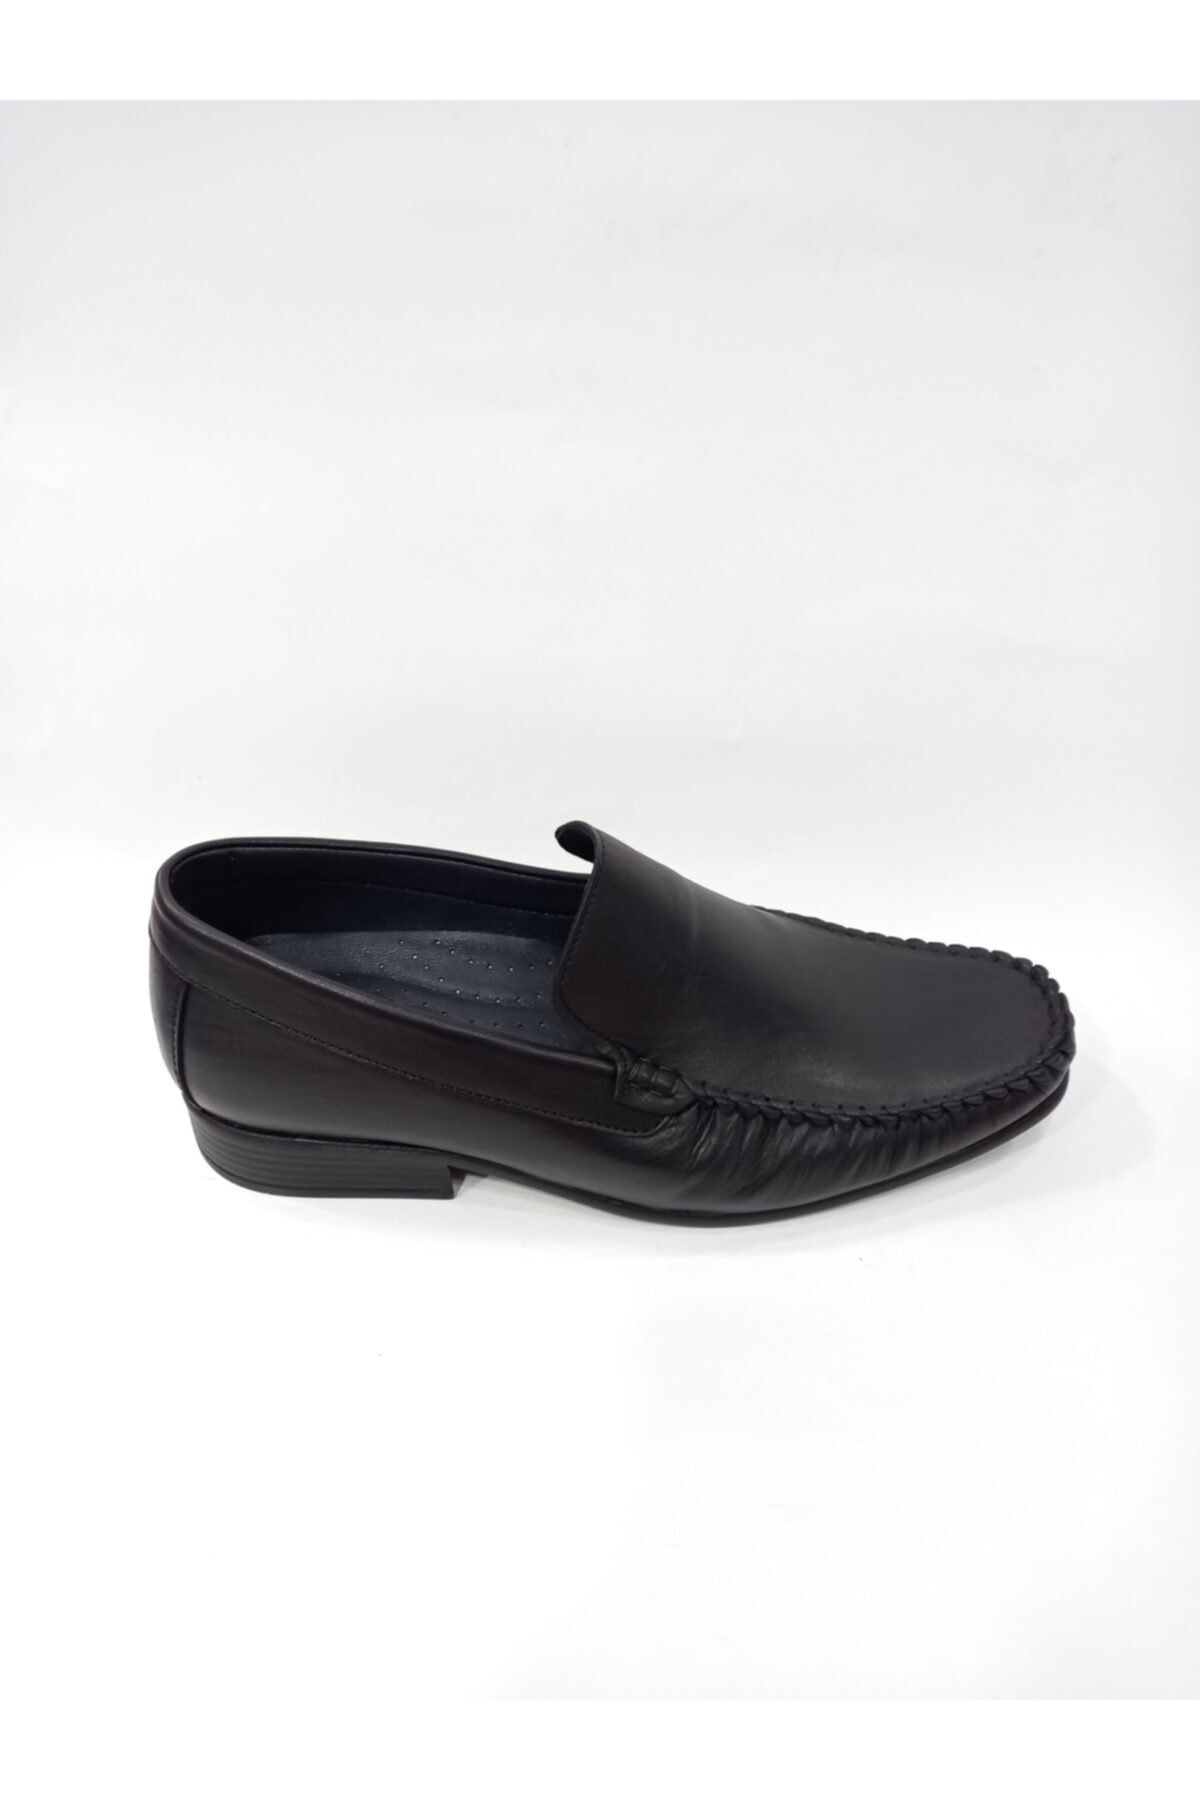 Modesa 128-03 Siyah Hakiki Deri Ortopedik Poli Taban Günlük Erkek Ayakkabı